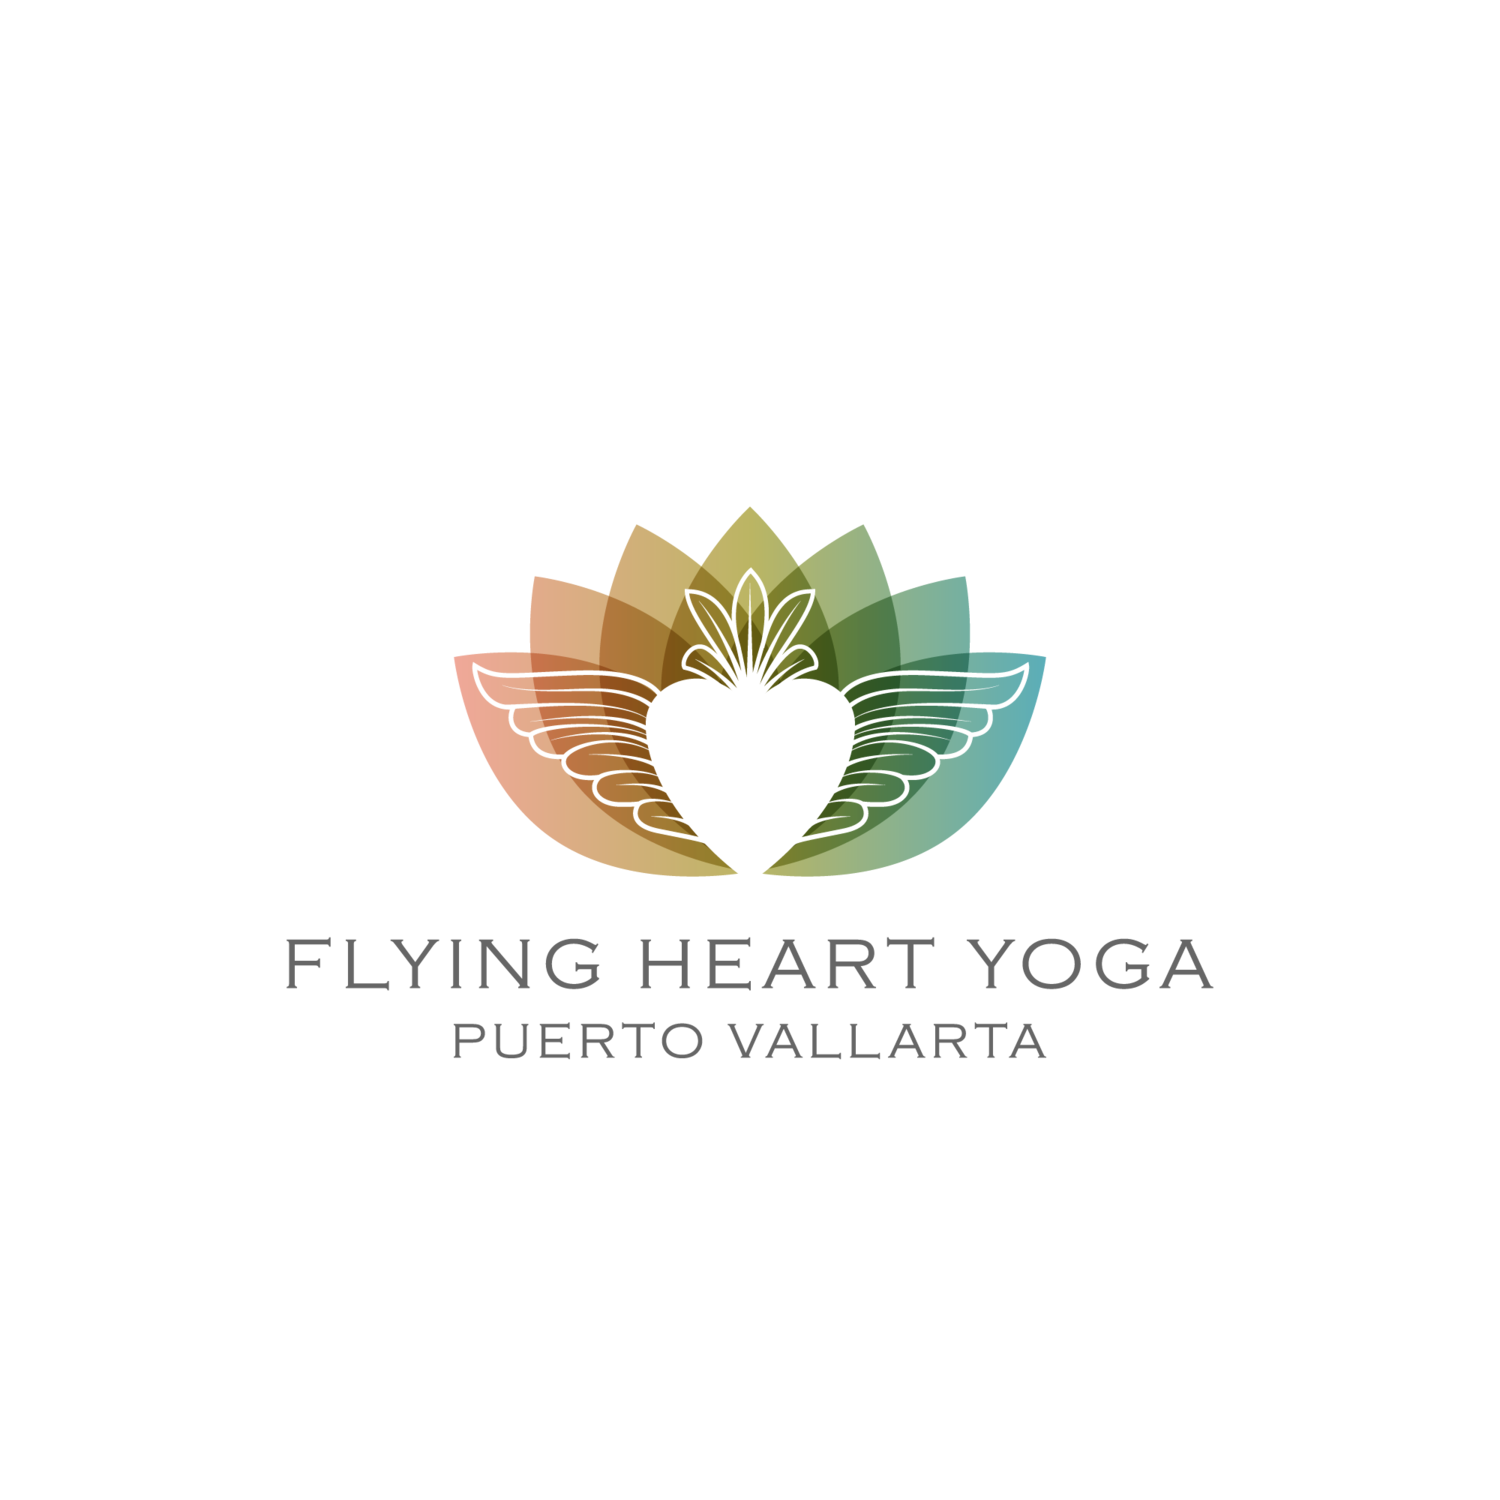 Flying Heart Yoga Puerto Vallarta